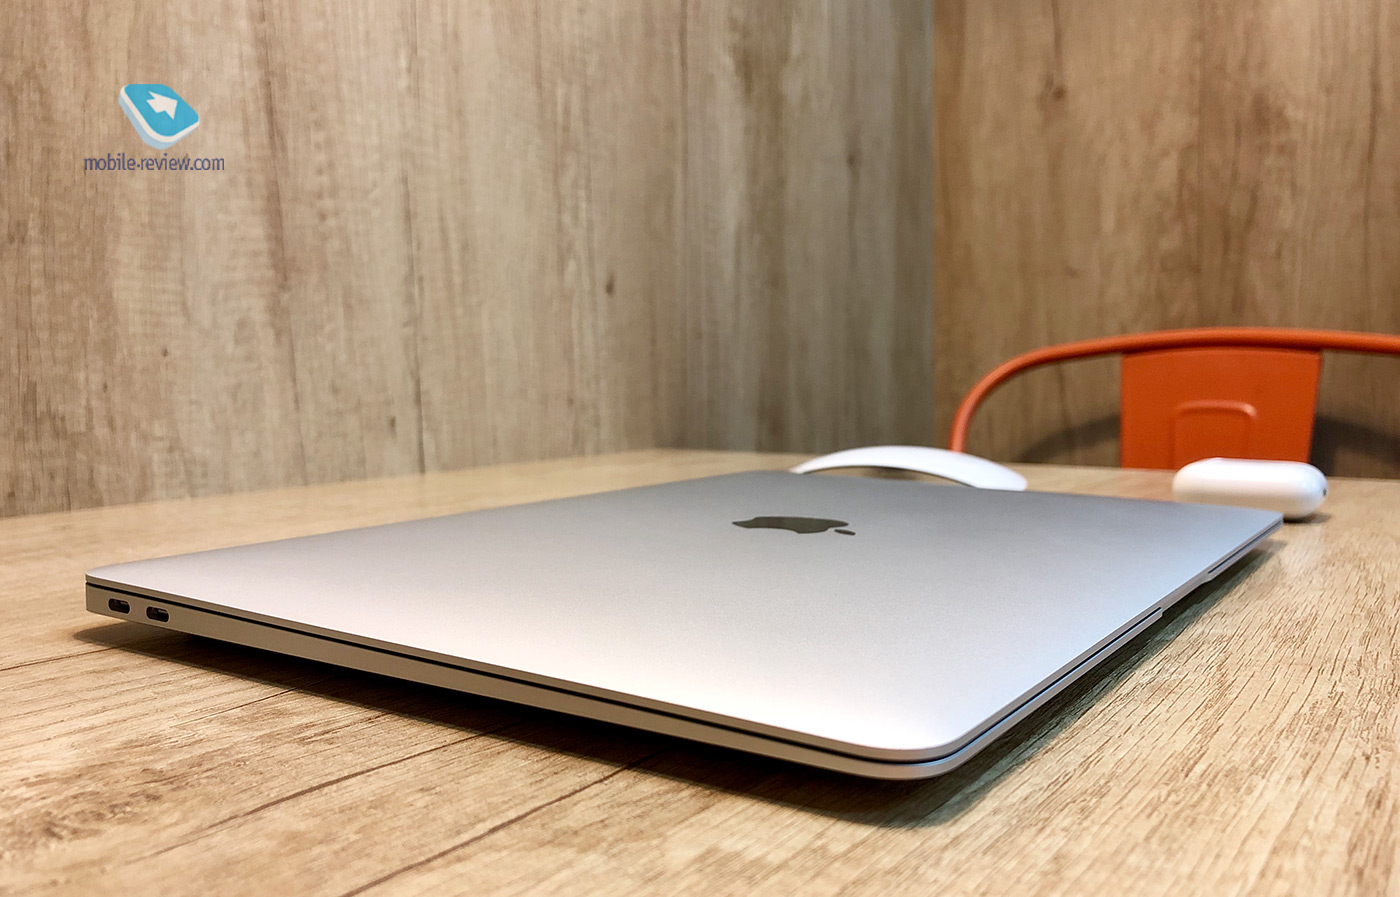   MacBook Air  Retina- (2018)